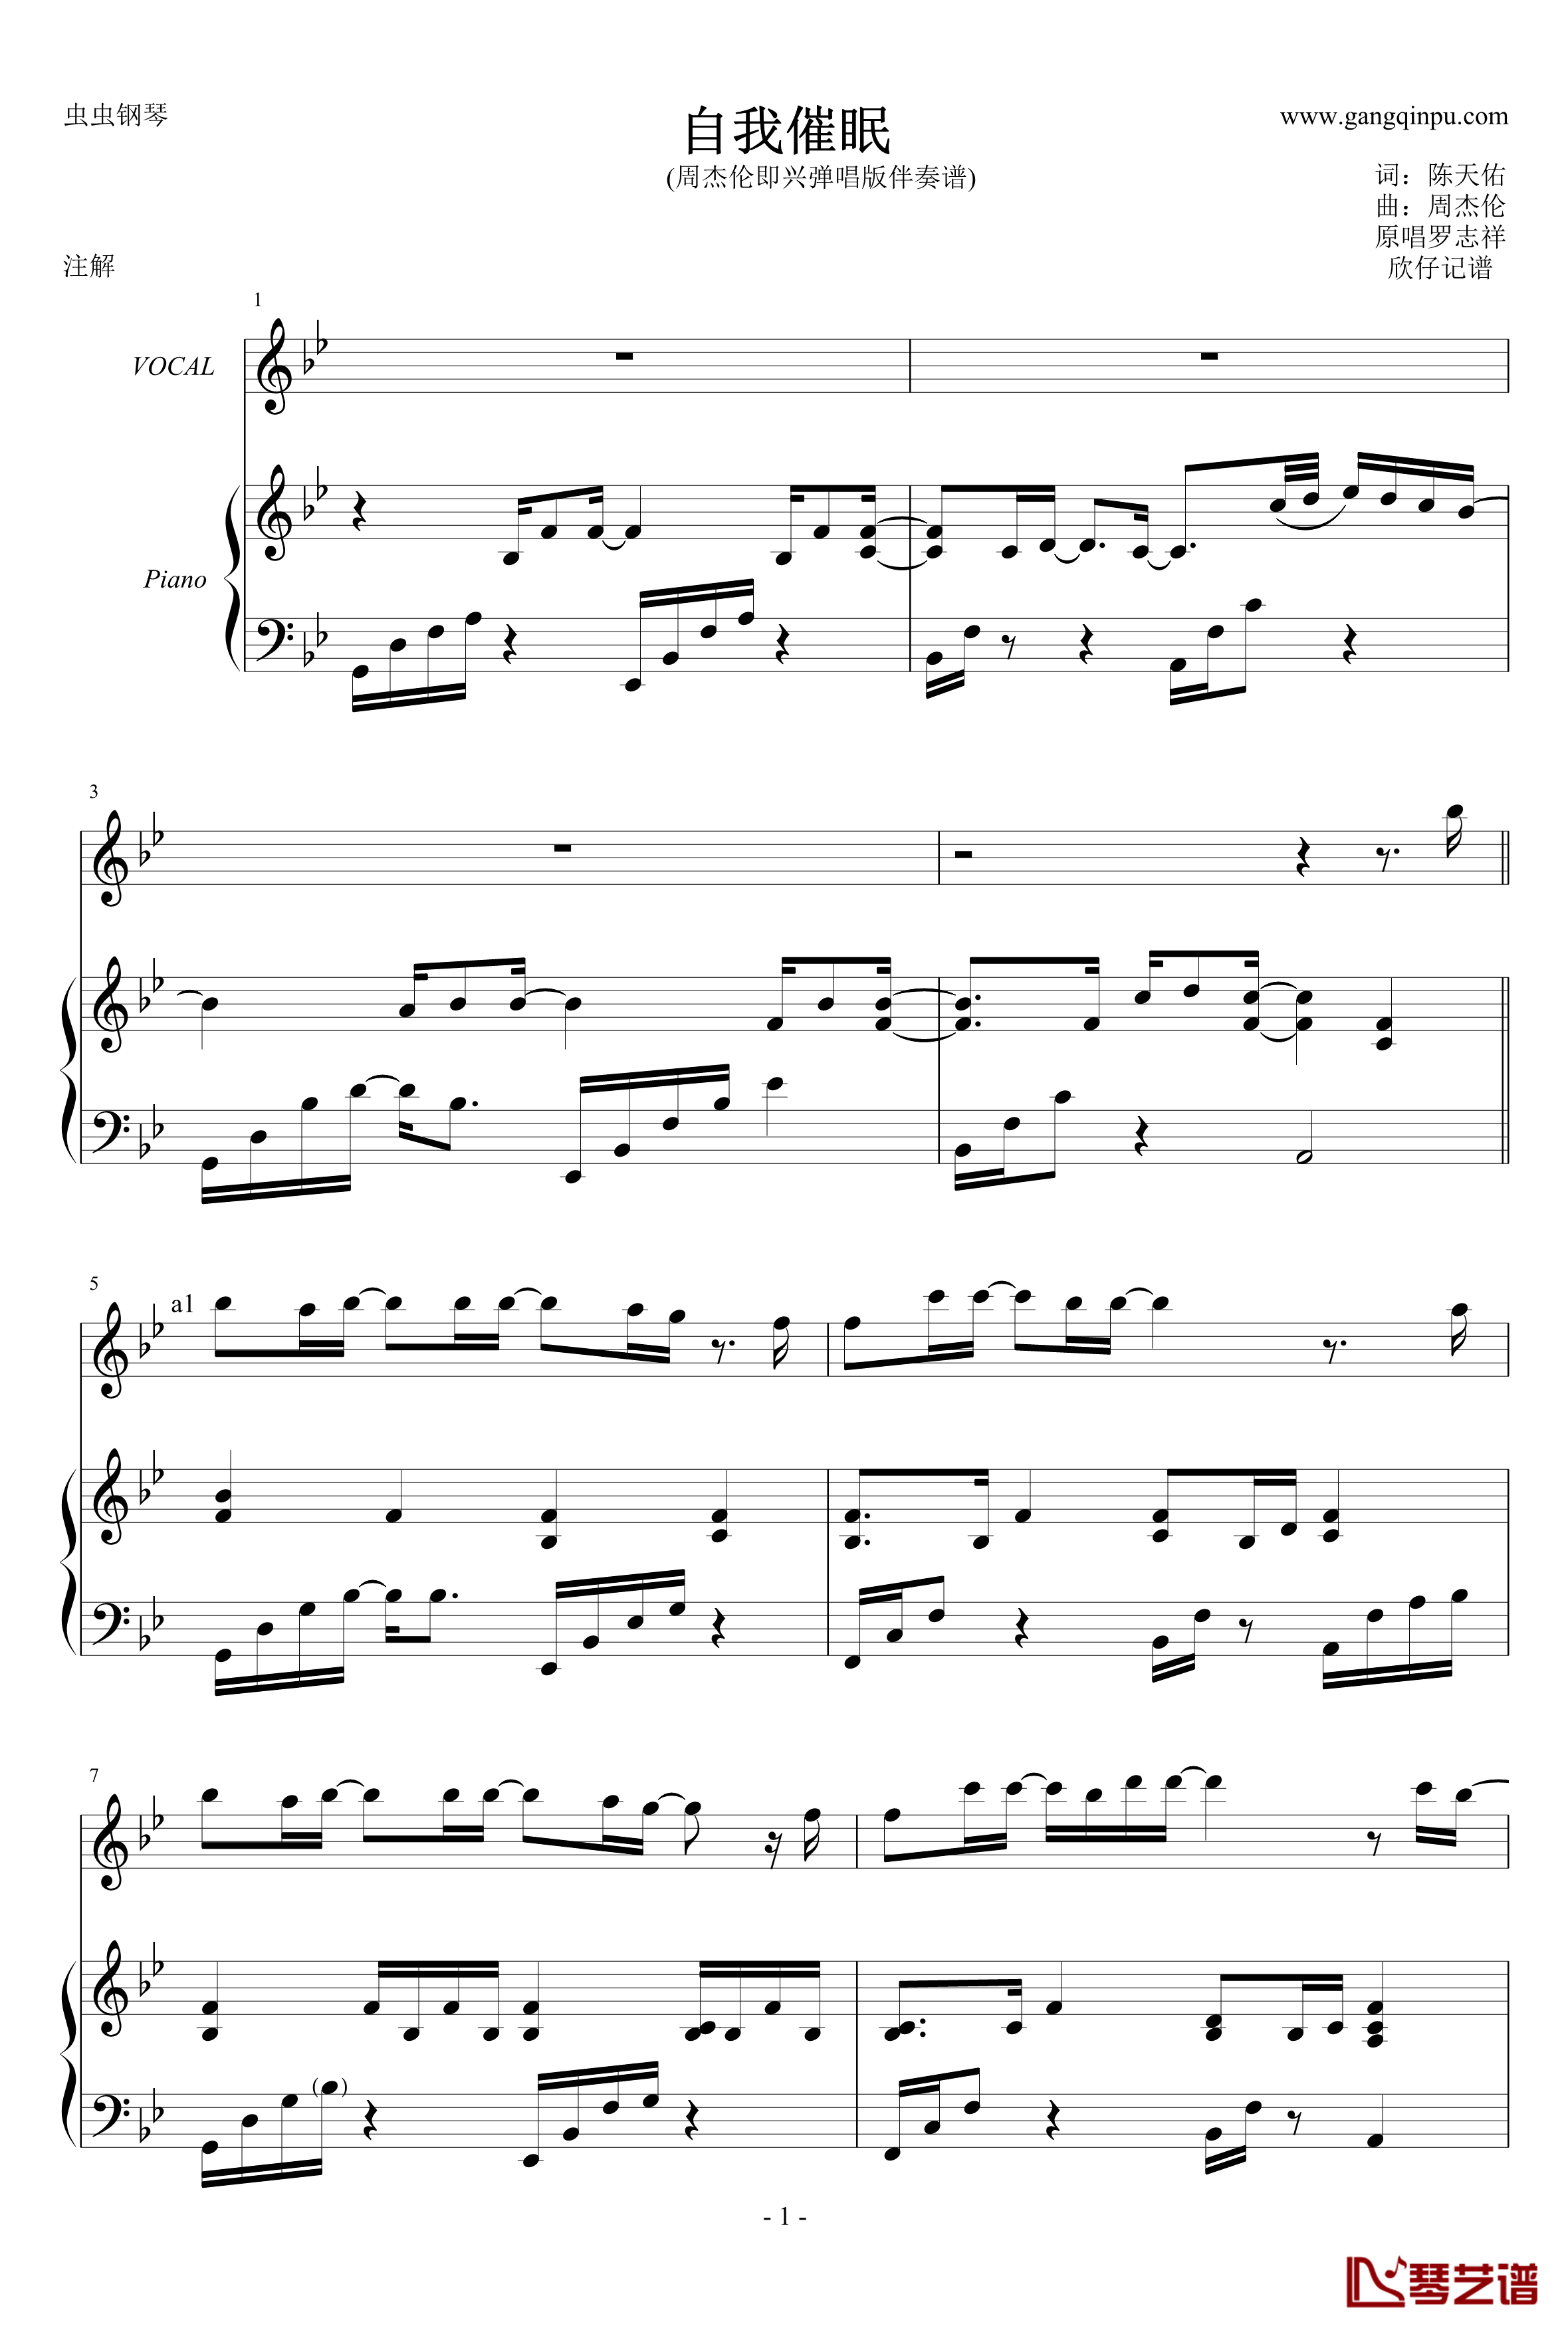 自我催眠钢琴谱-周杰伦弹唱版-周杰伦1